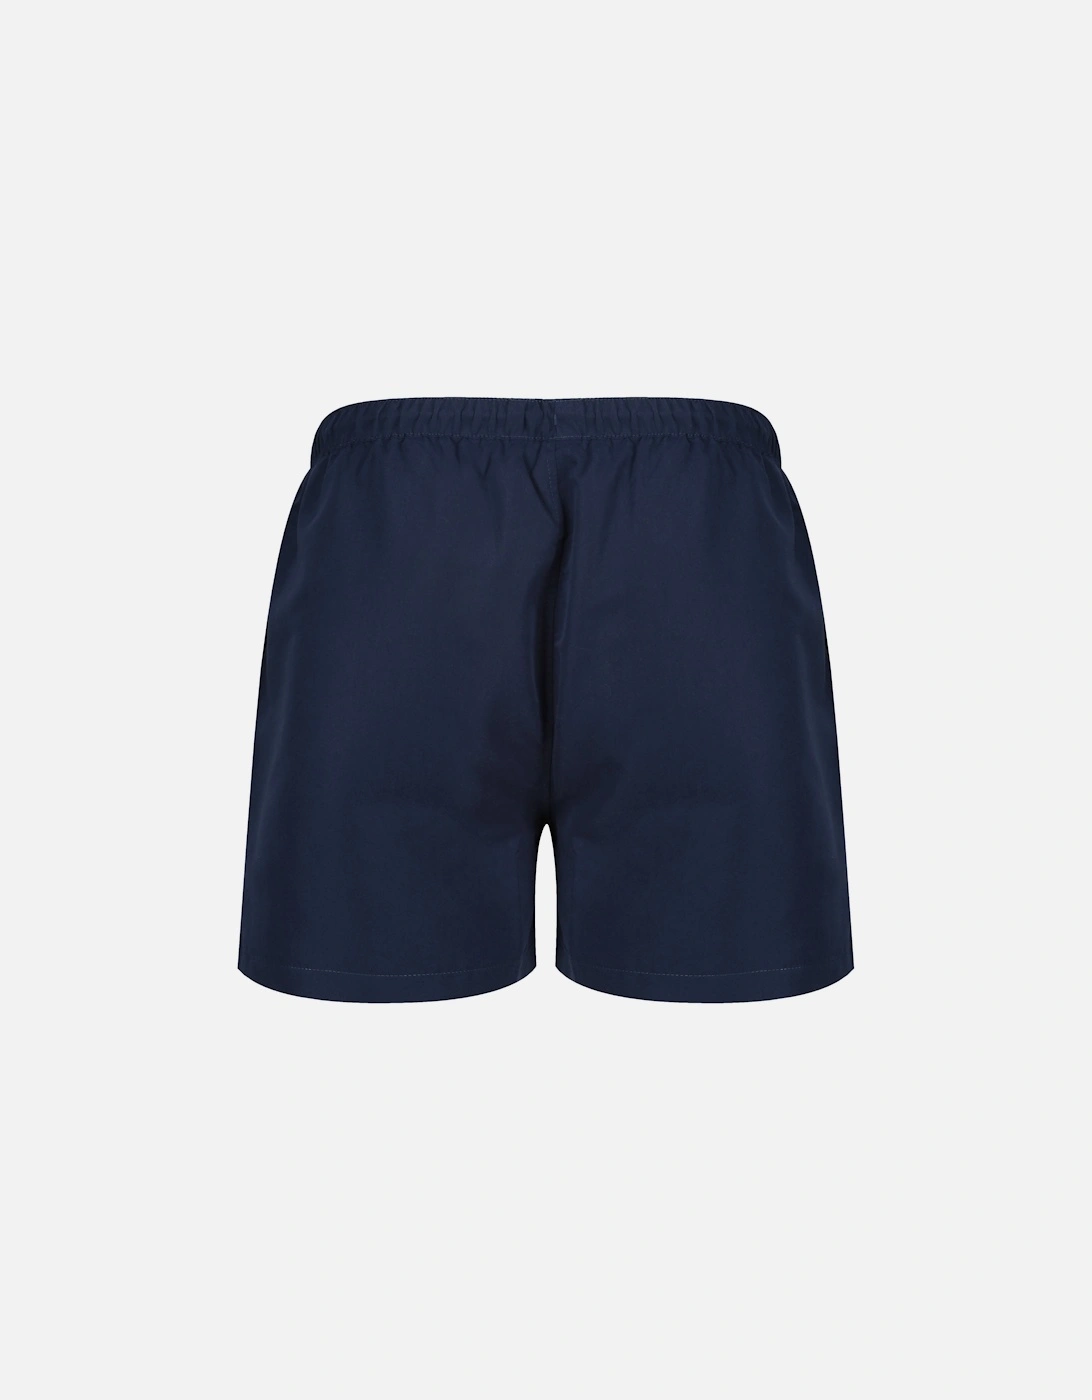 Dem Slackers Swim Shorts | Navy